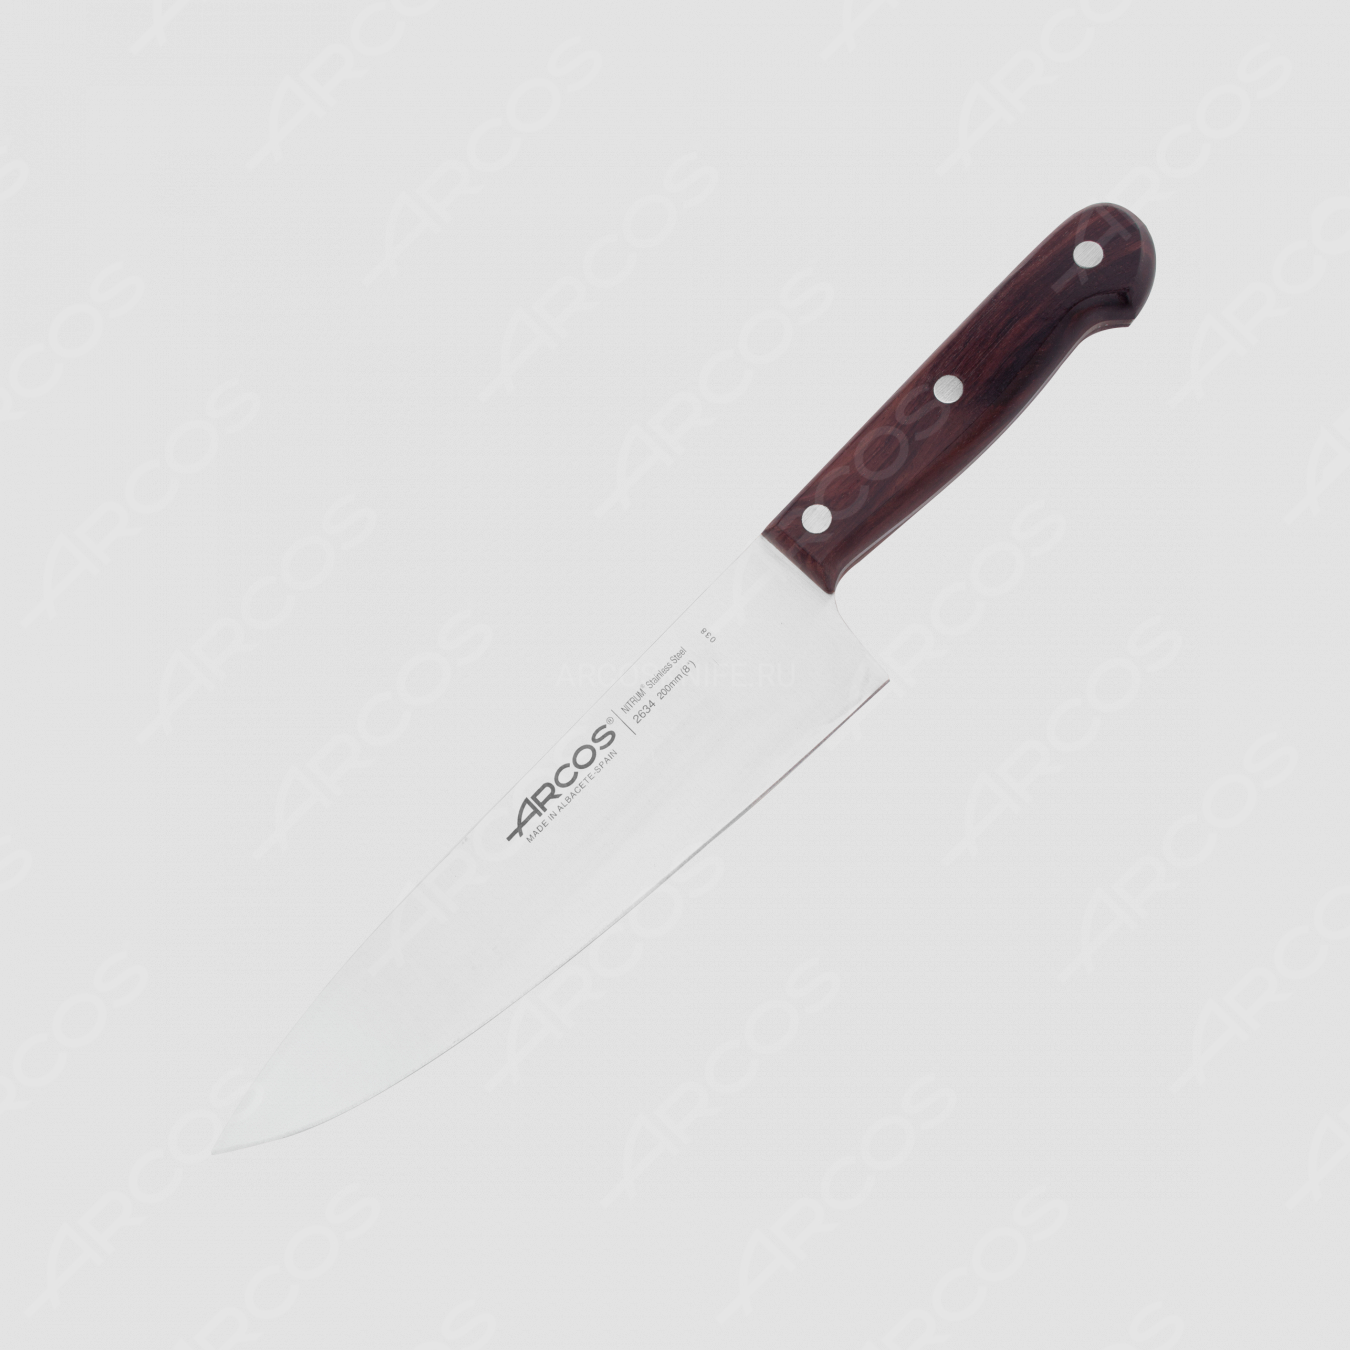 Нож кухонный поварской 20 см, серия Atlantico, ARCOS, Испания